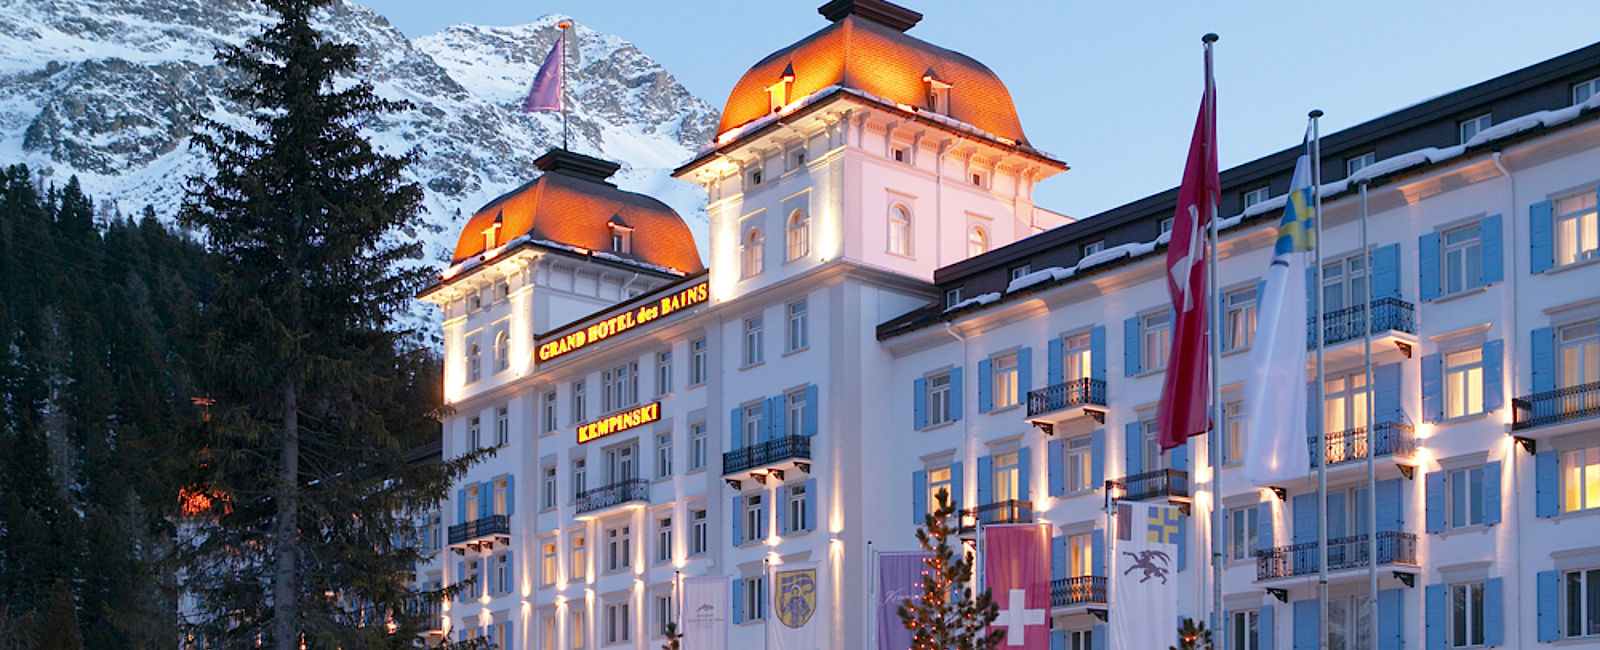 HOTELTEST
 Kempinski Grand Hotel des Bains 
 Beliebte Gourmet- und Wellnessoase 